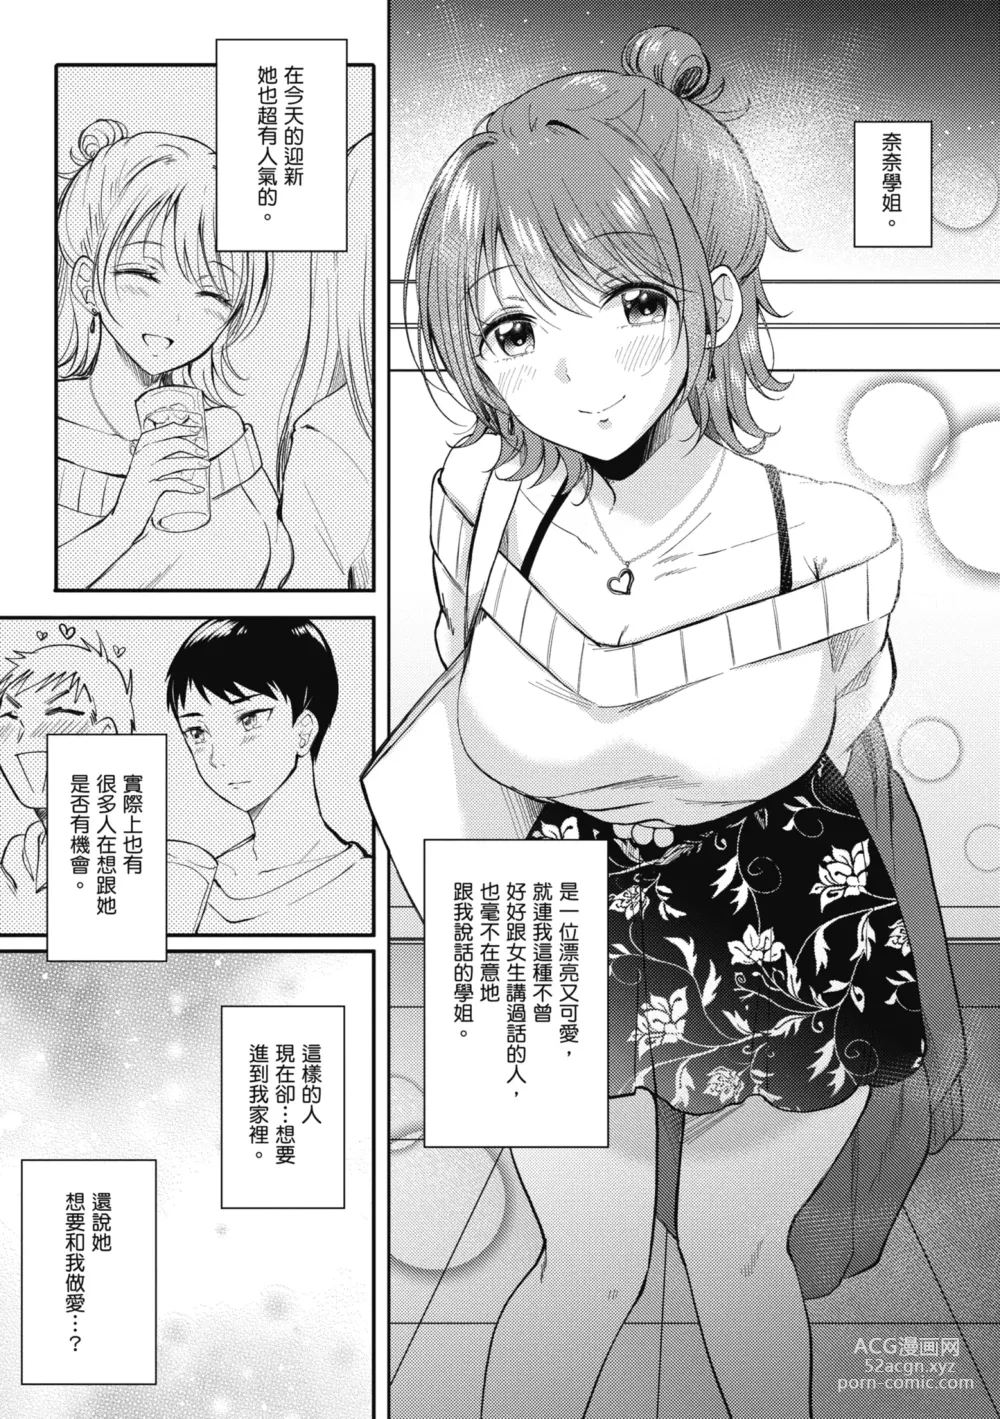 Page 7 of manga 學姐是我的炮友